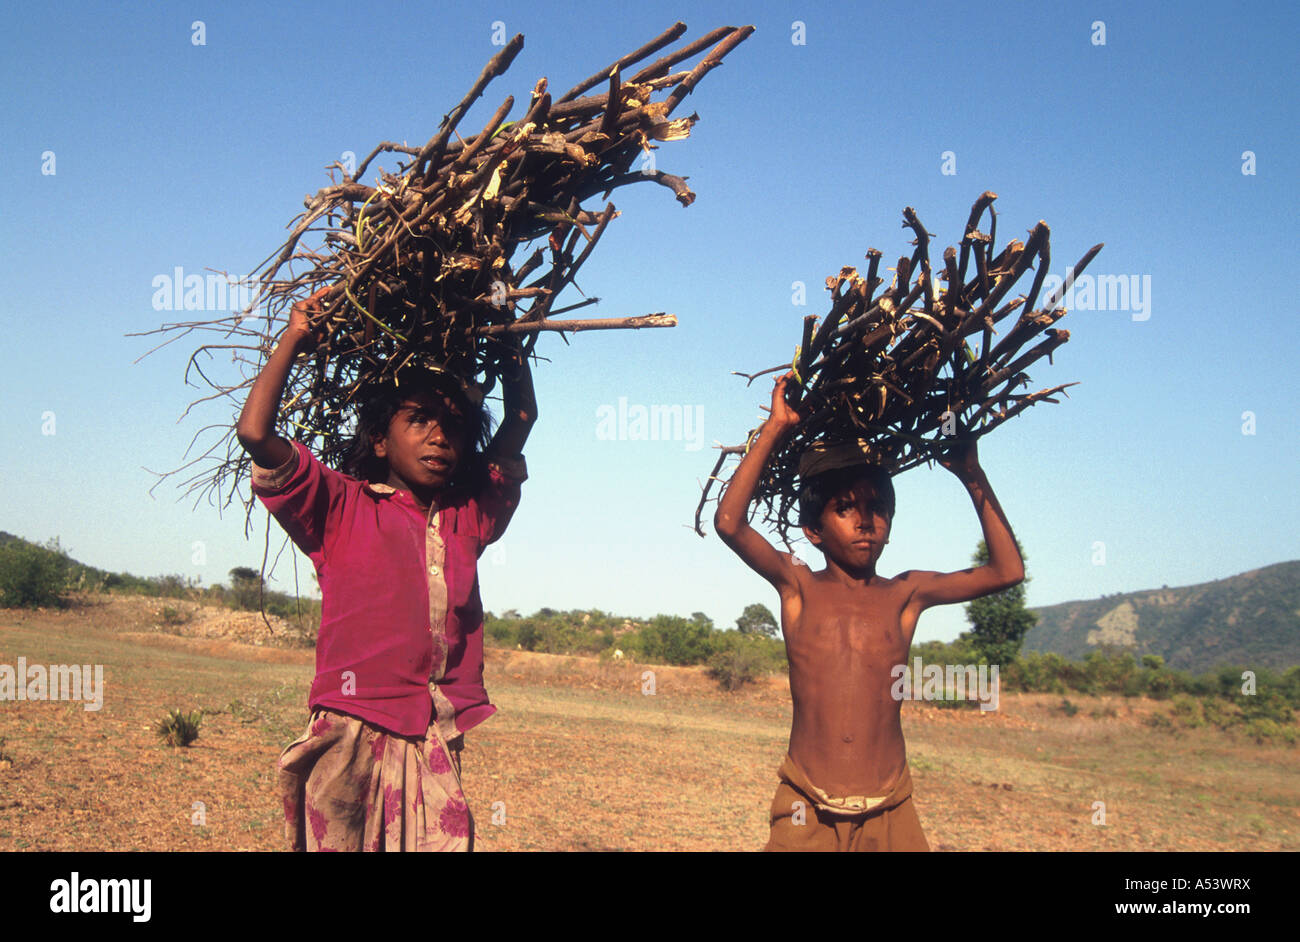 Painet ha2228 5014 Indien Kinder tragen Brennholz Land entwickeln Nation wirtschaftlich entwickelten Kultur, die Schwellenländer Stockfoto